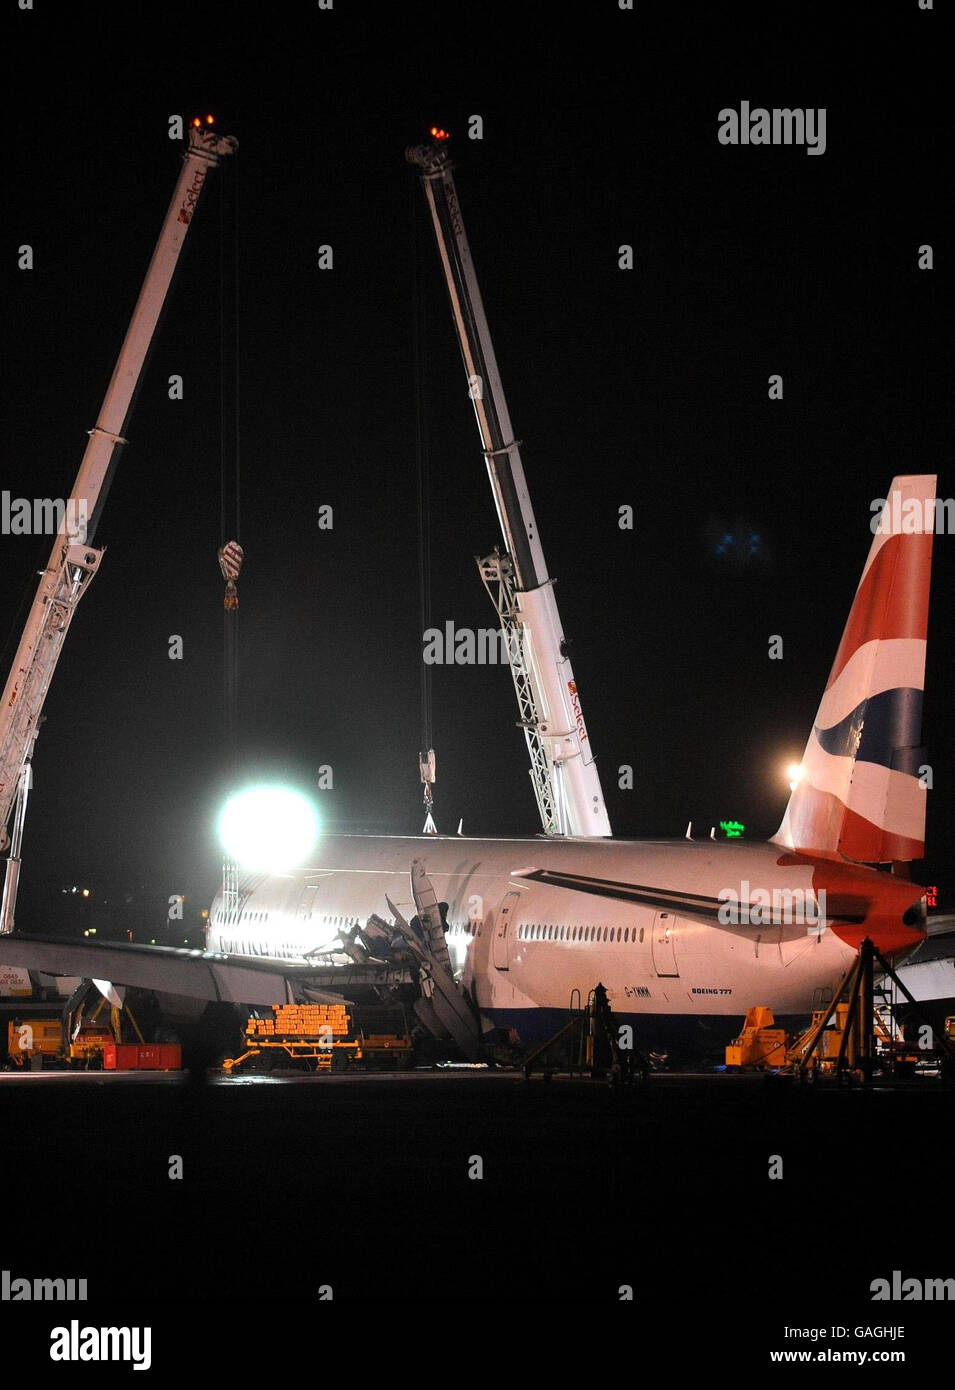 Heathrow airport incident Stock Photo